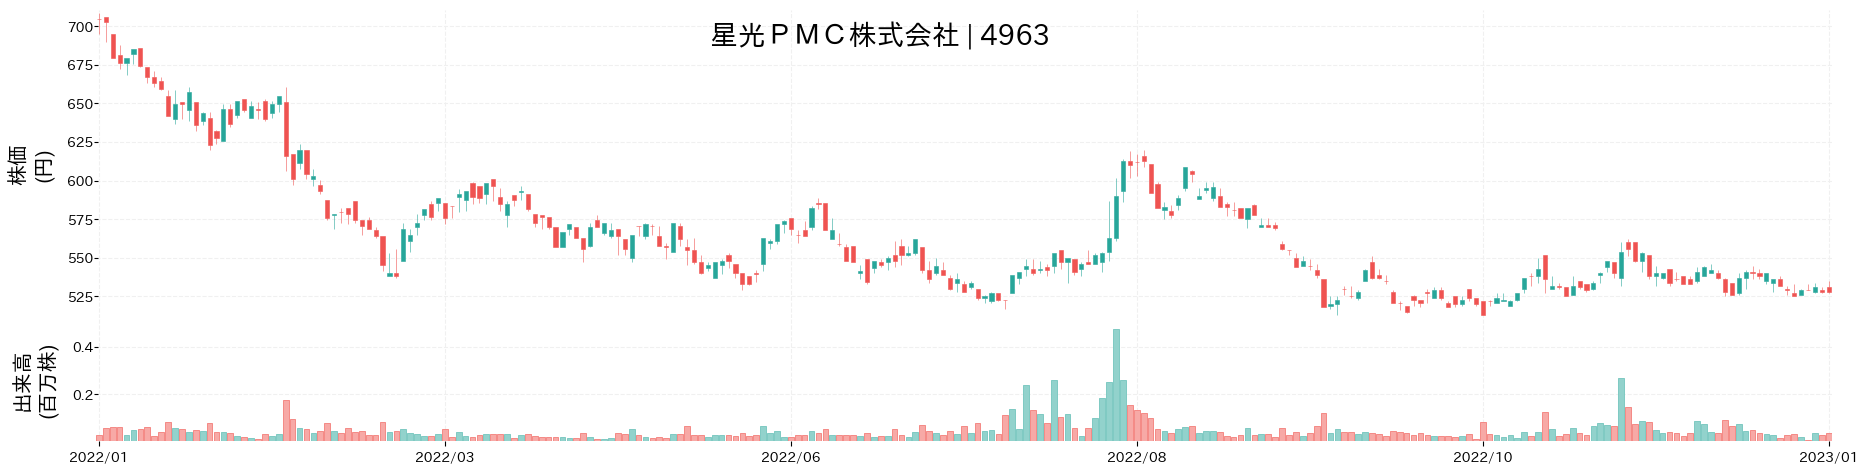 星光PMCの株価推移(2022)